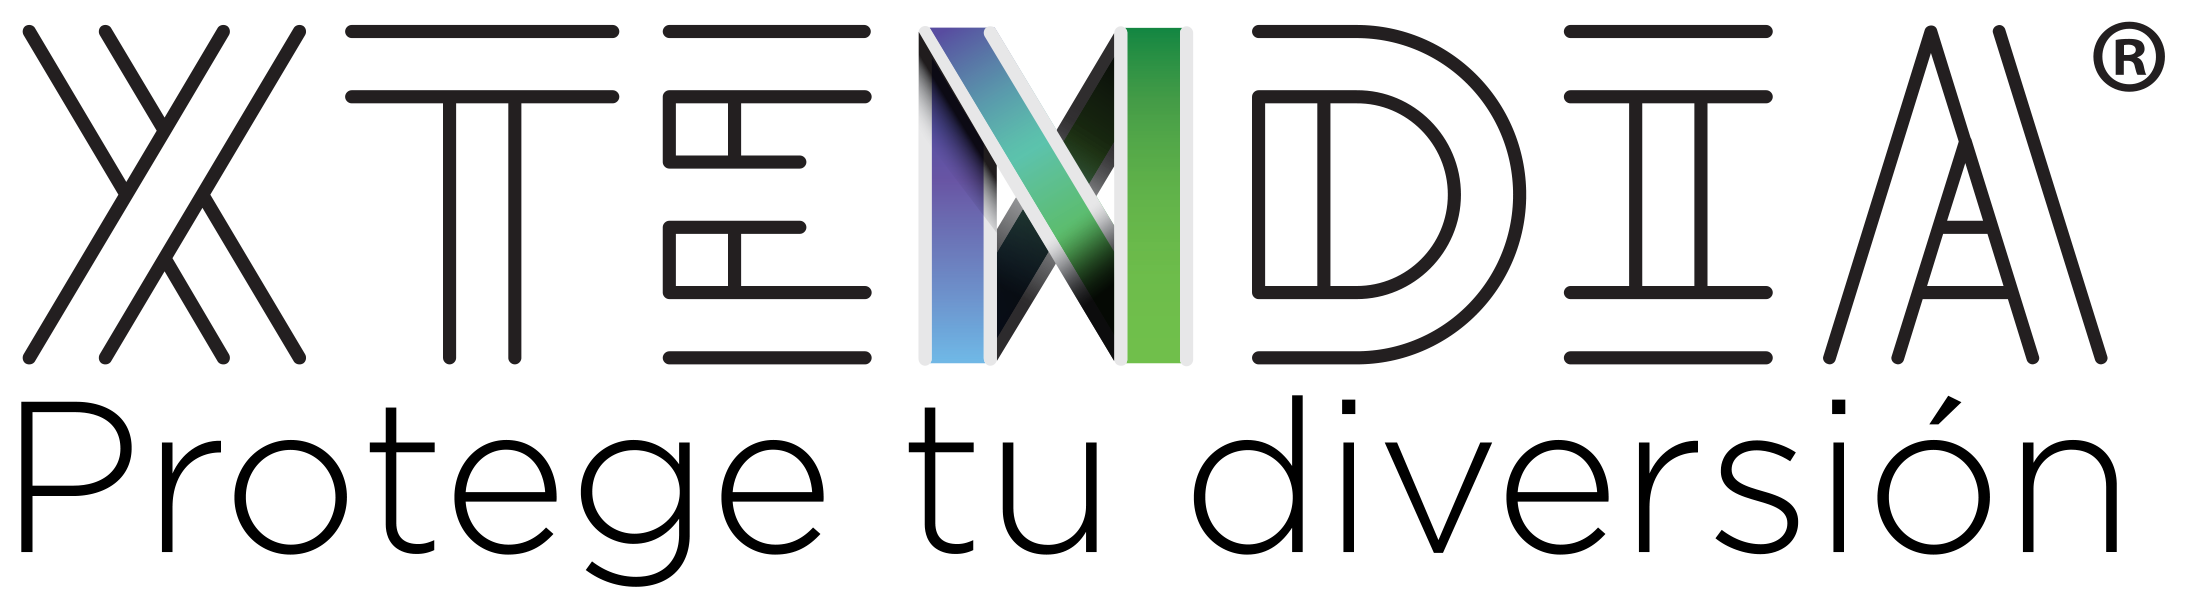 Logo Xtendia